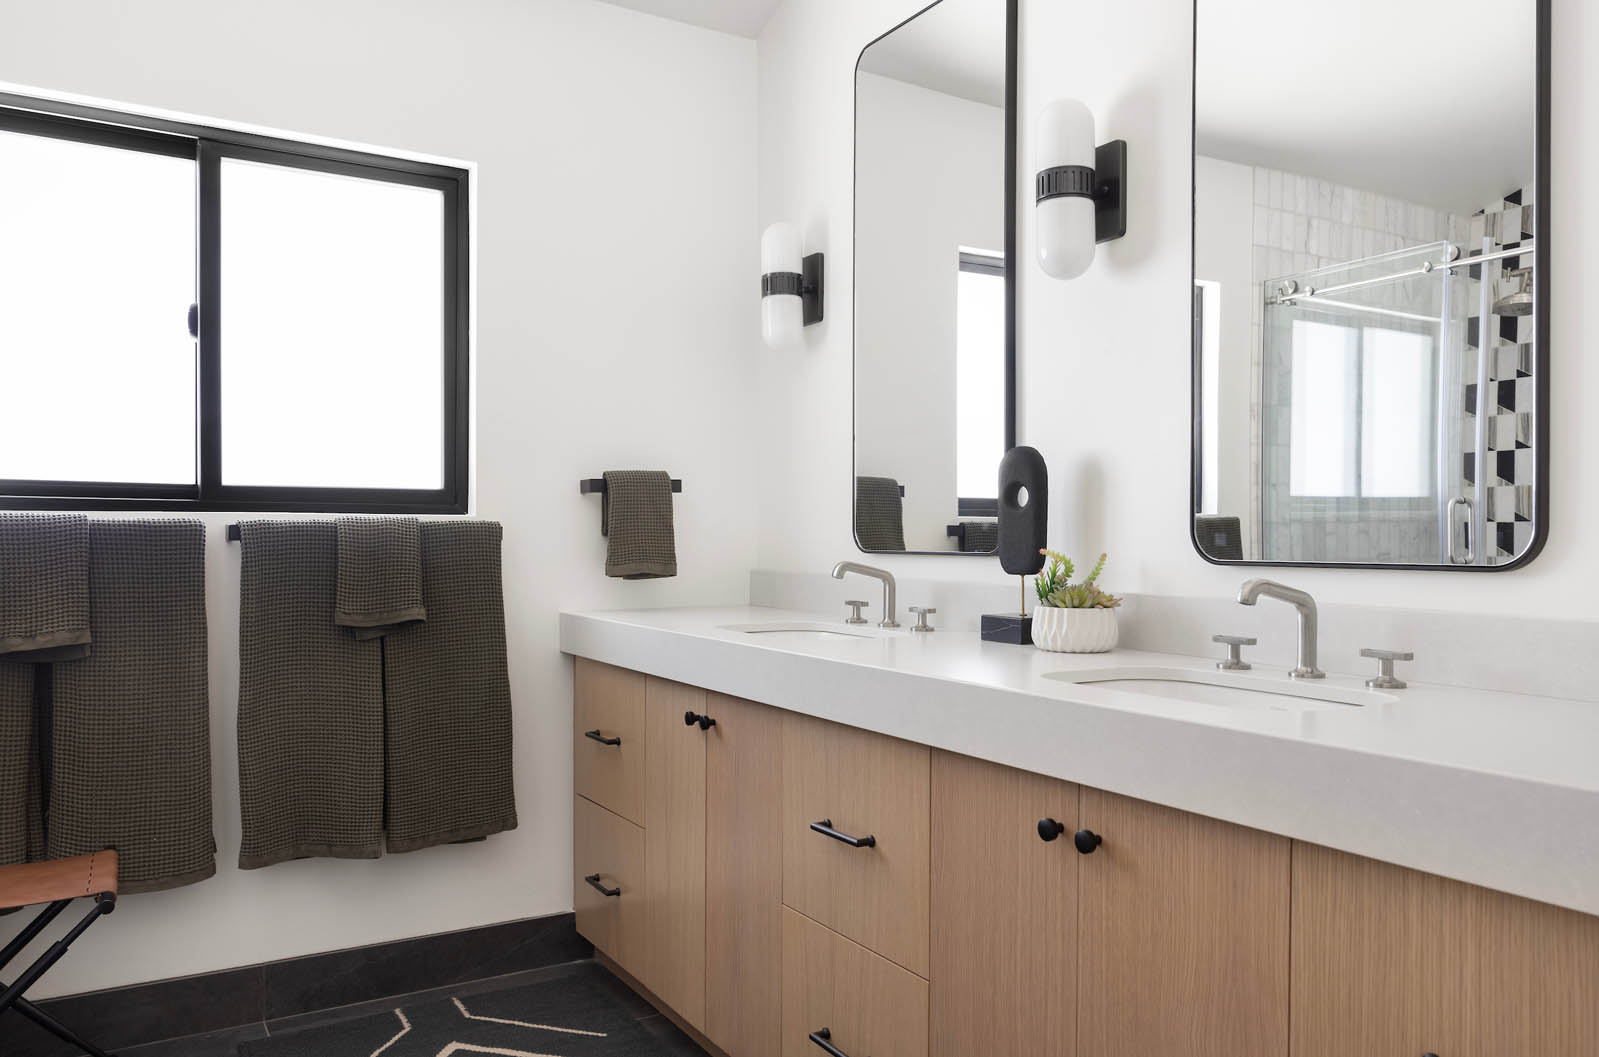 Midcentury bathroom remodel vanity